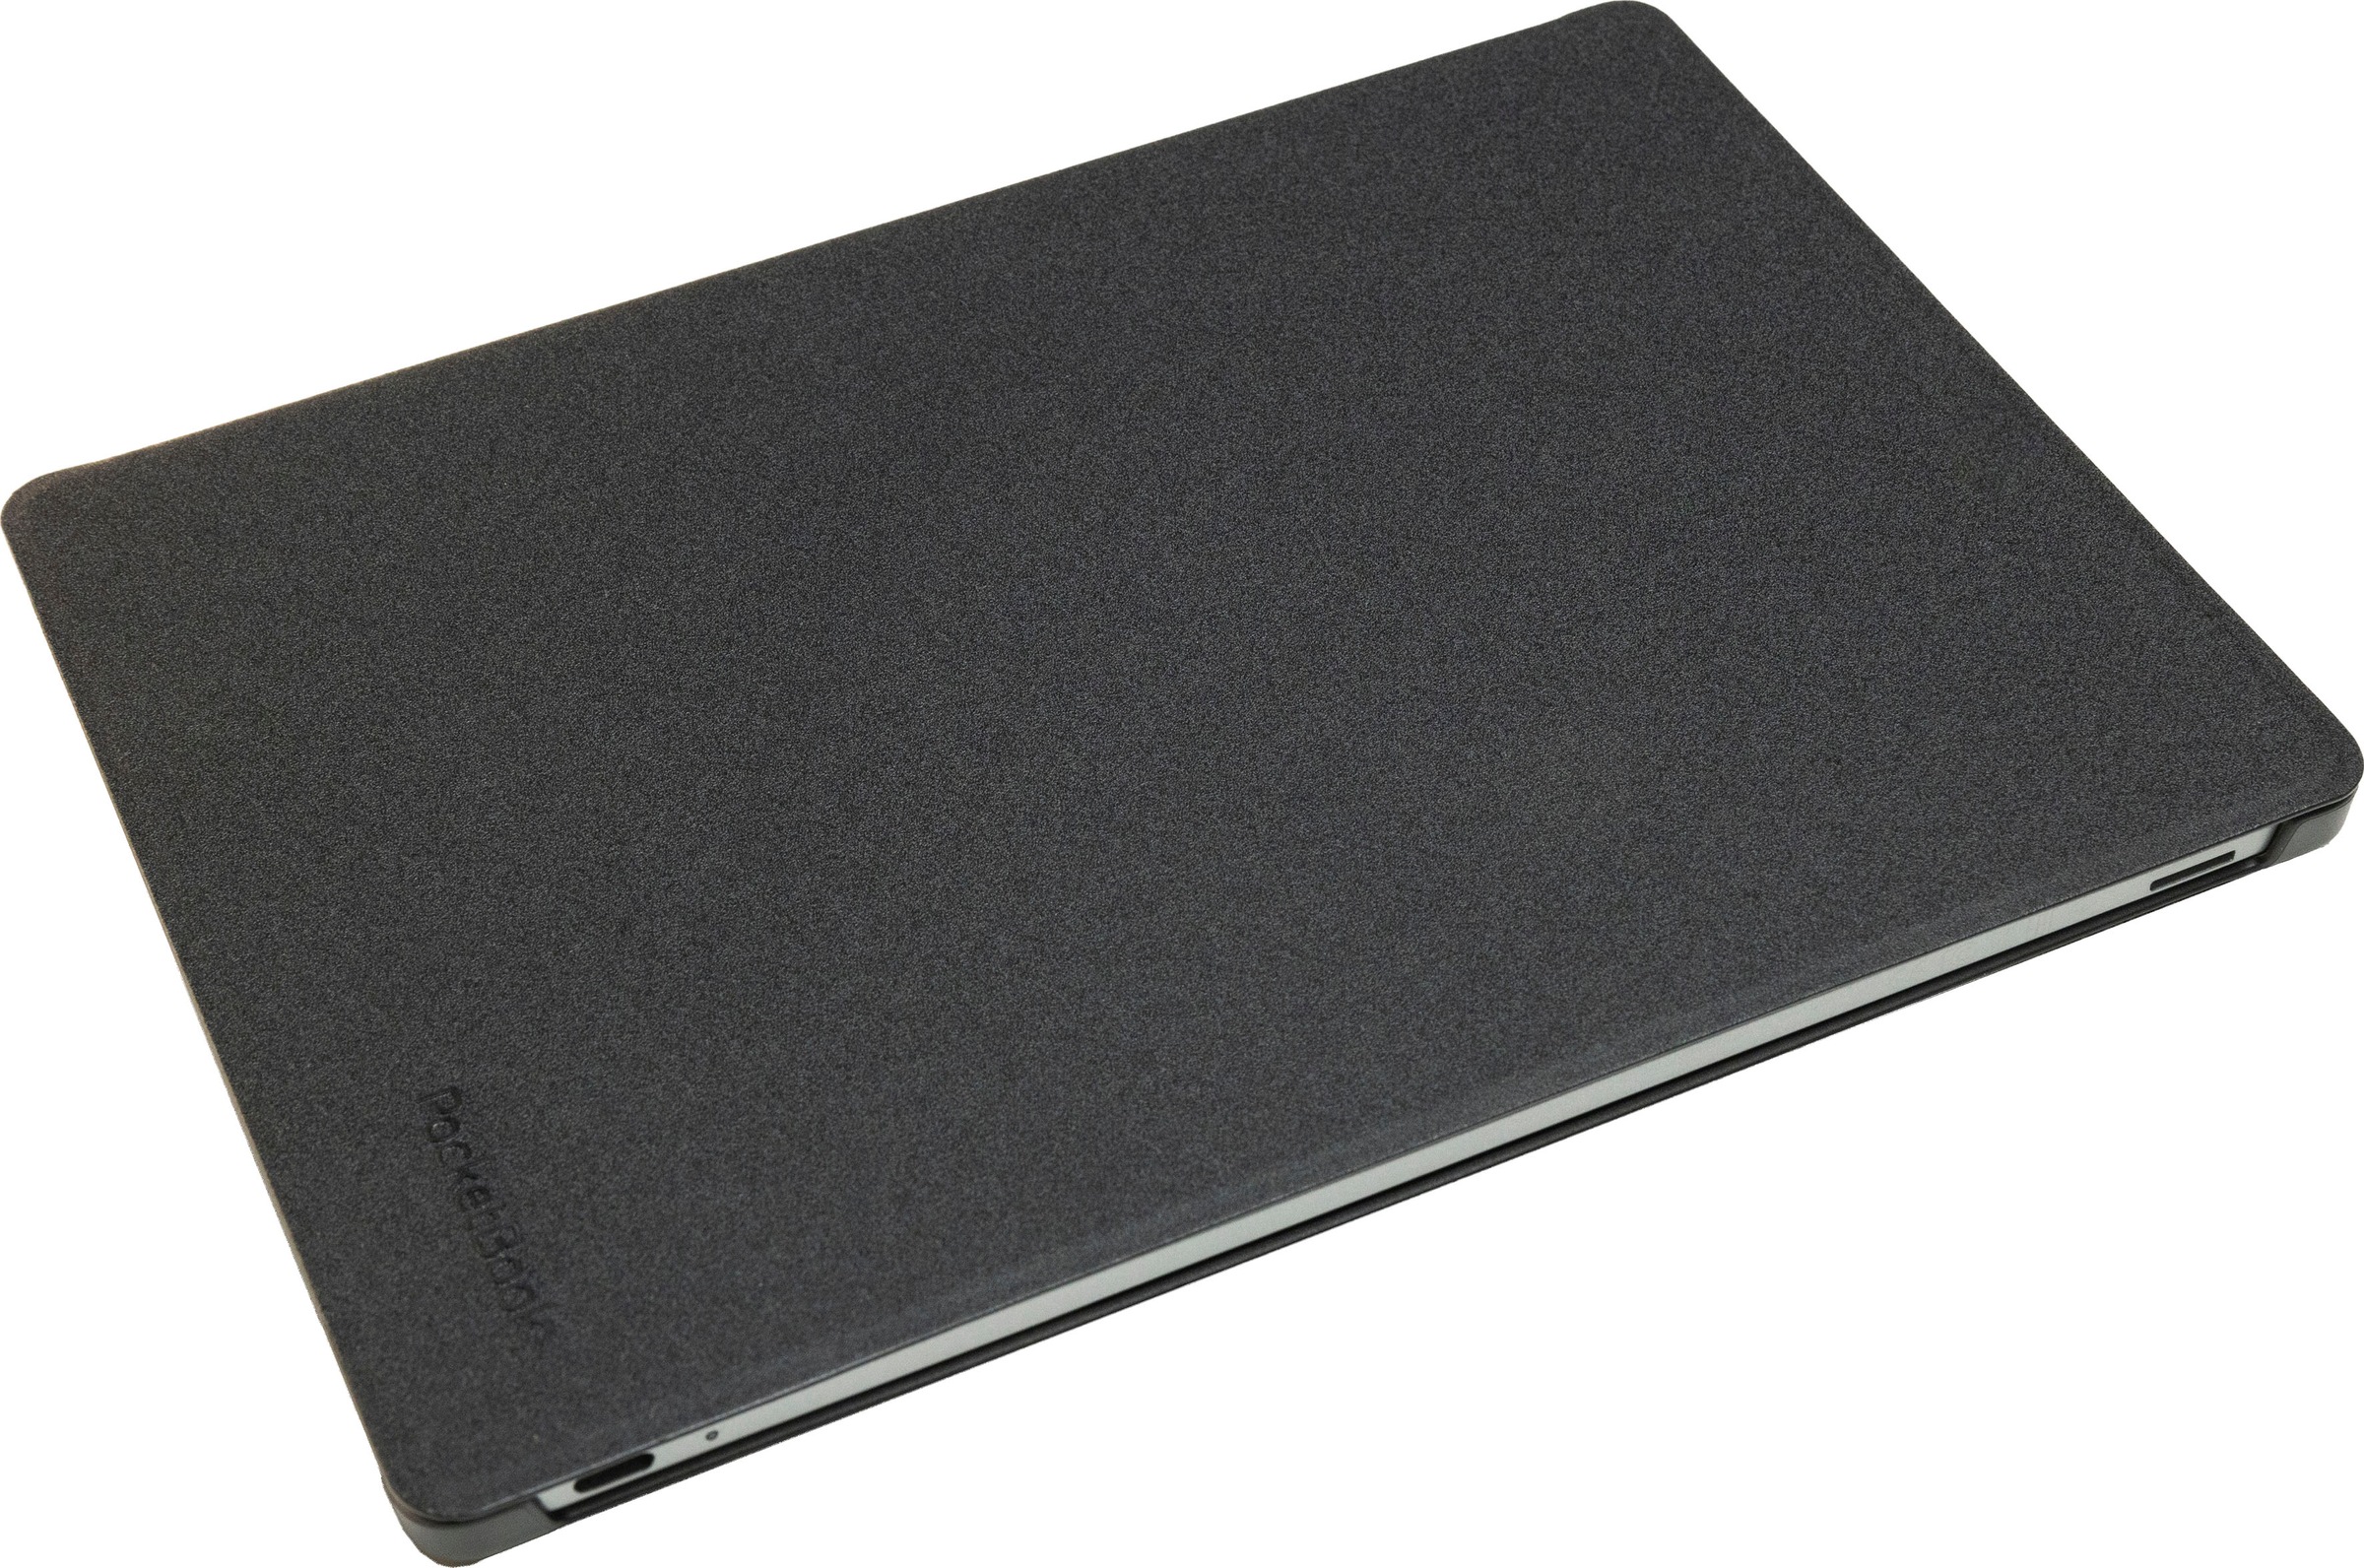 PocketBook Smartphone-Hülle »Pocketbook Shell Cover for InkPad Lite - black«